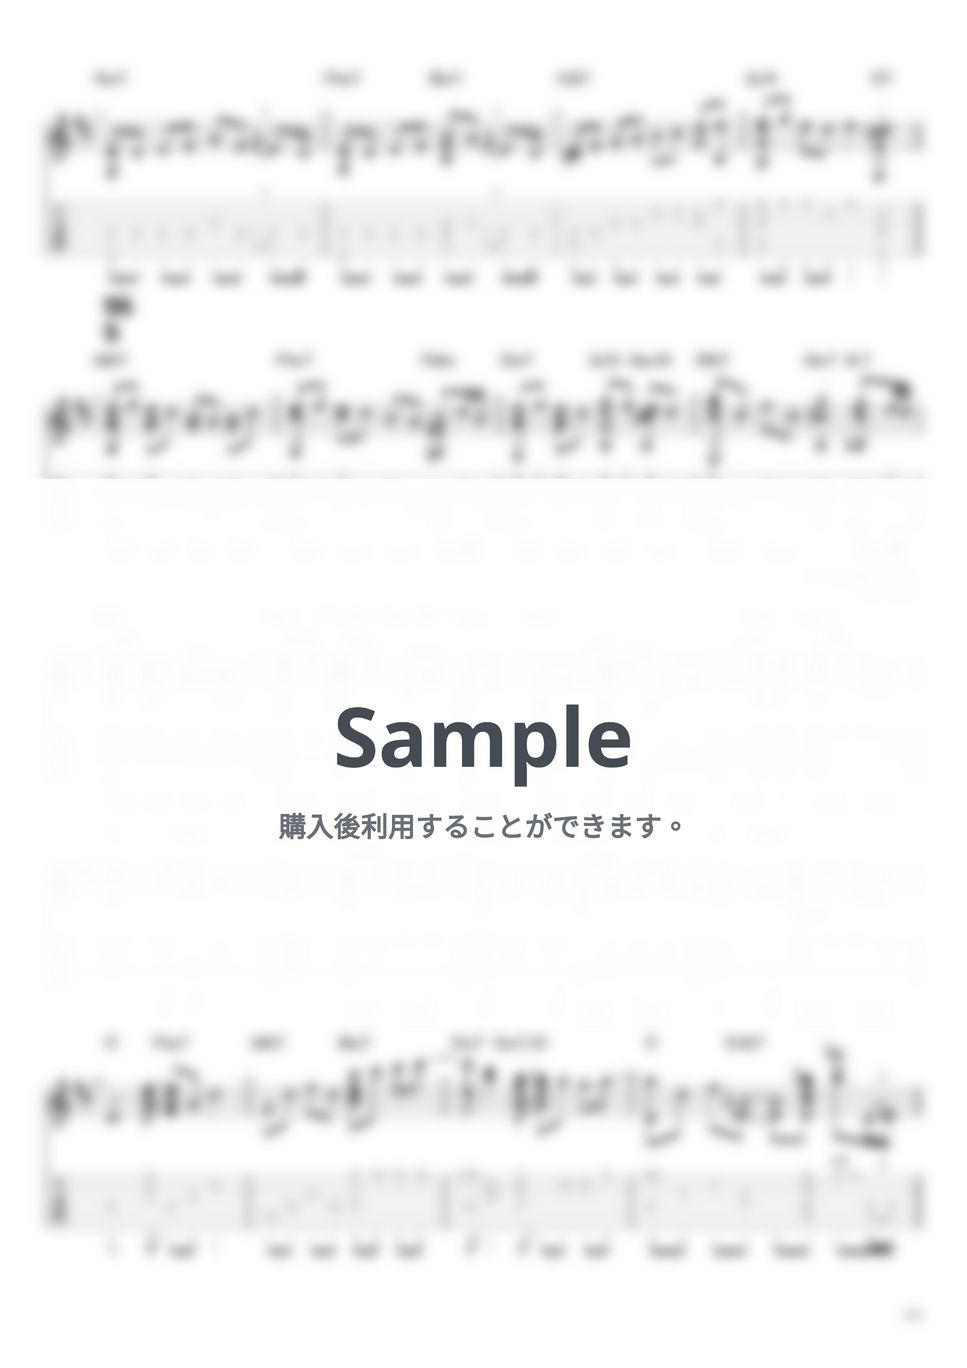 藤井風 - 満ちてゆく (ソロギター / タブ譜) by 井上さとみ